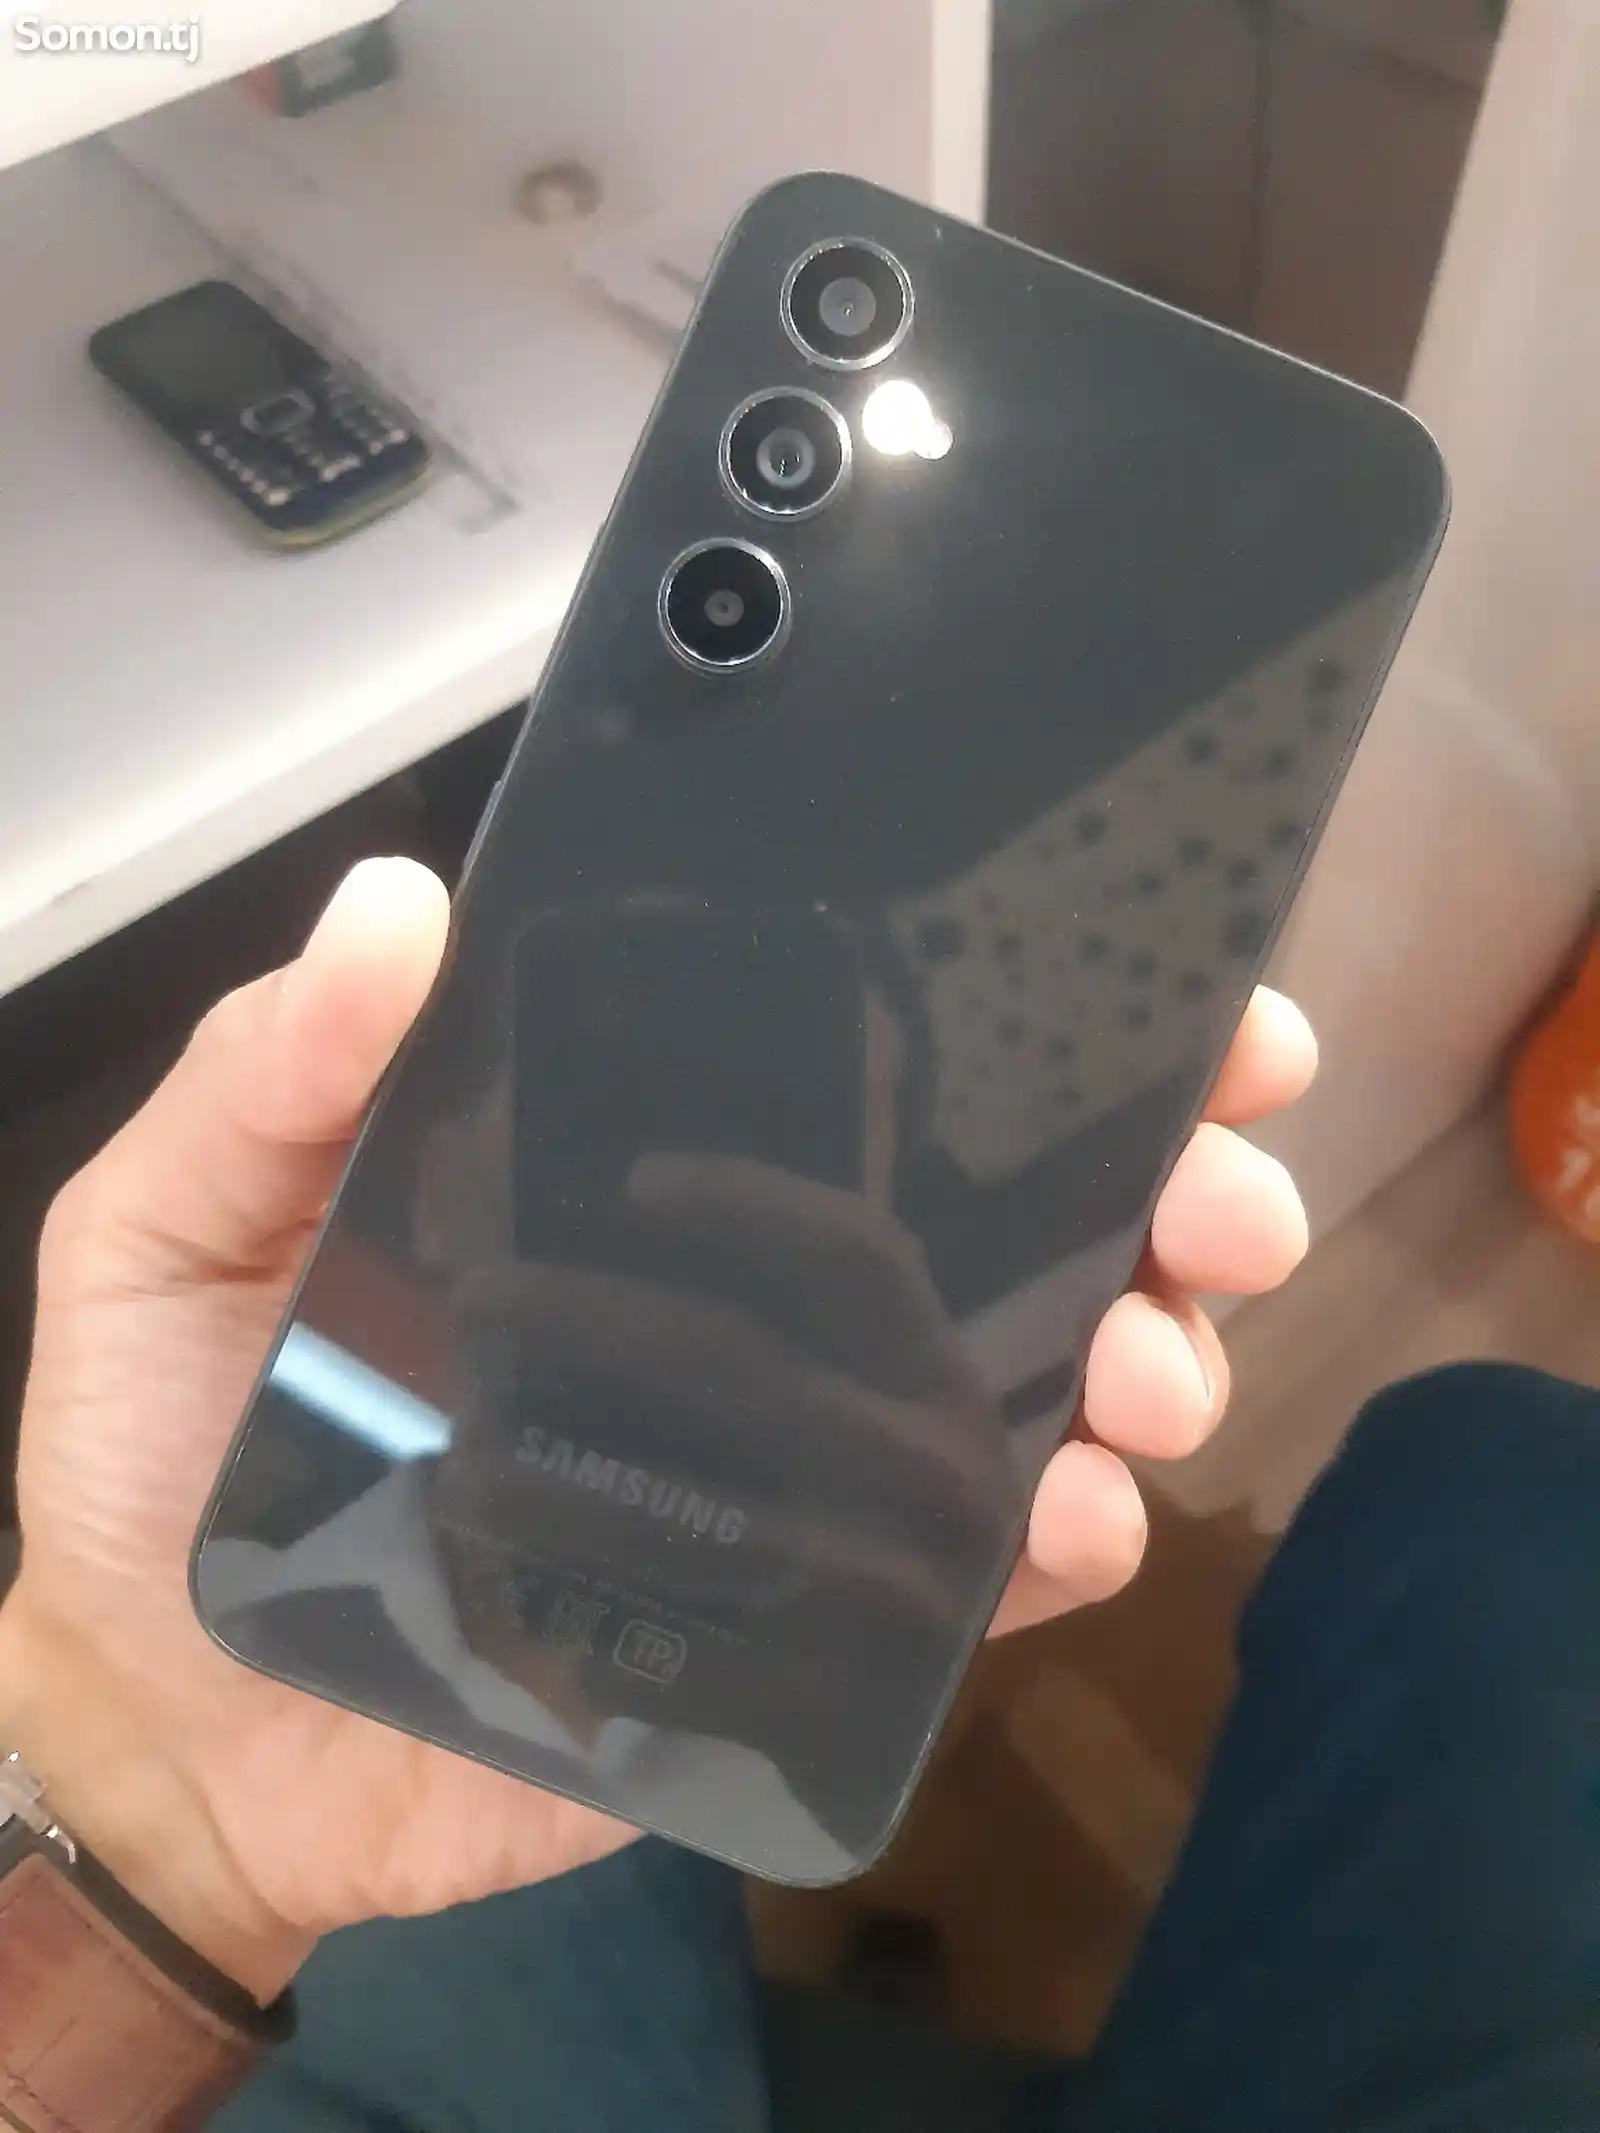 Samsung Galaxy A54-3